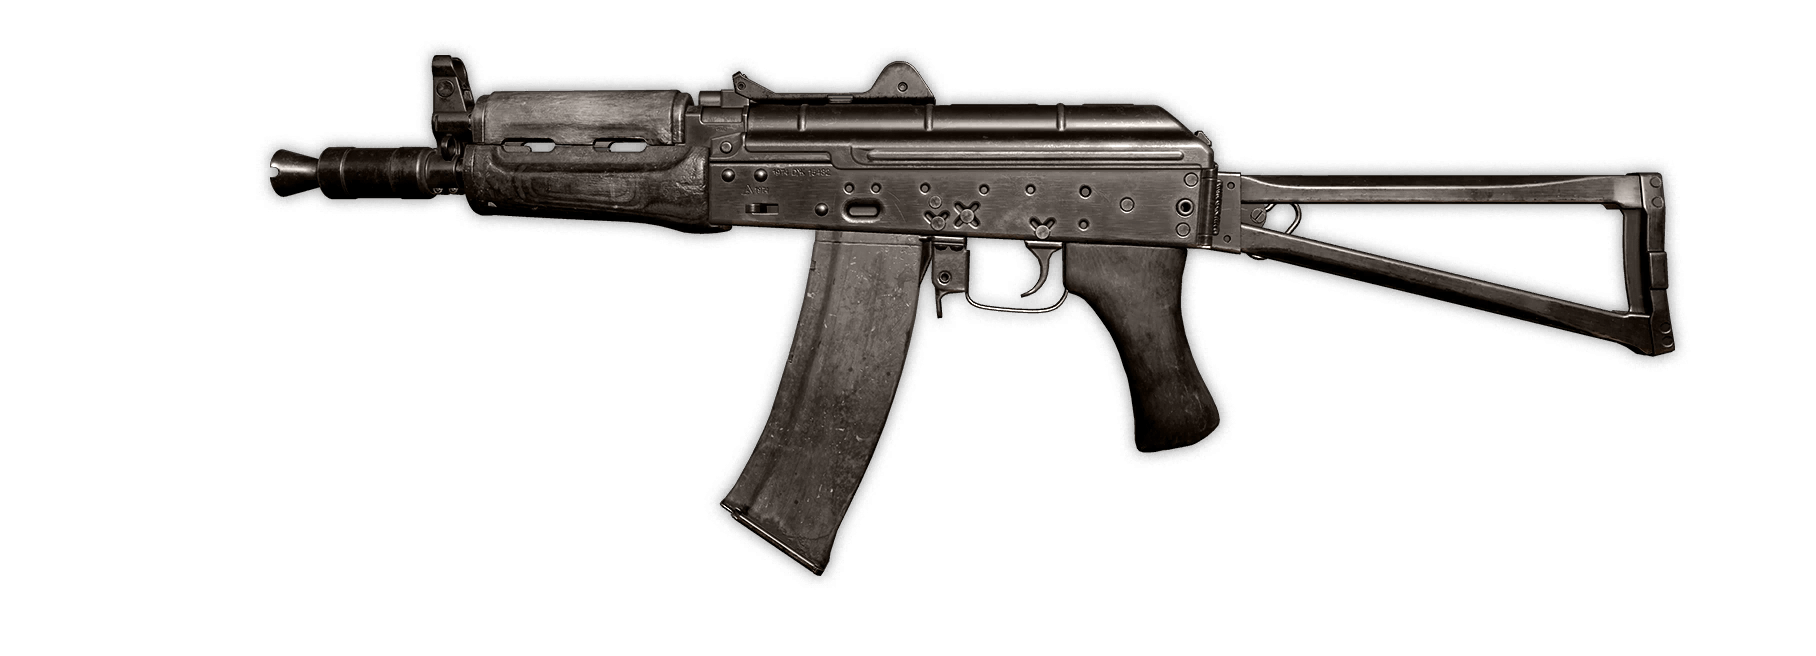 AK-74u Image